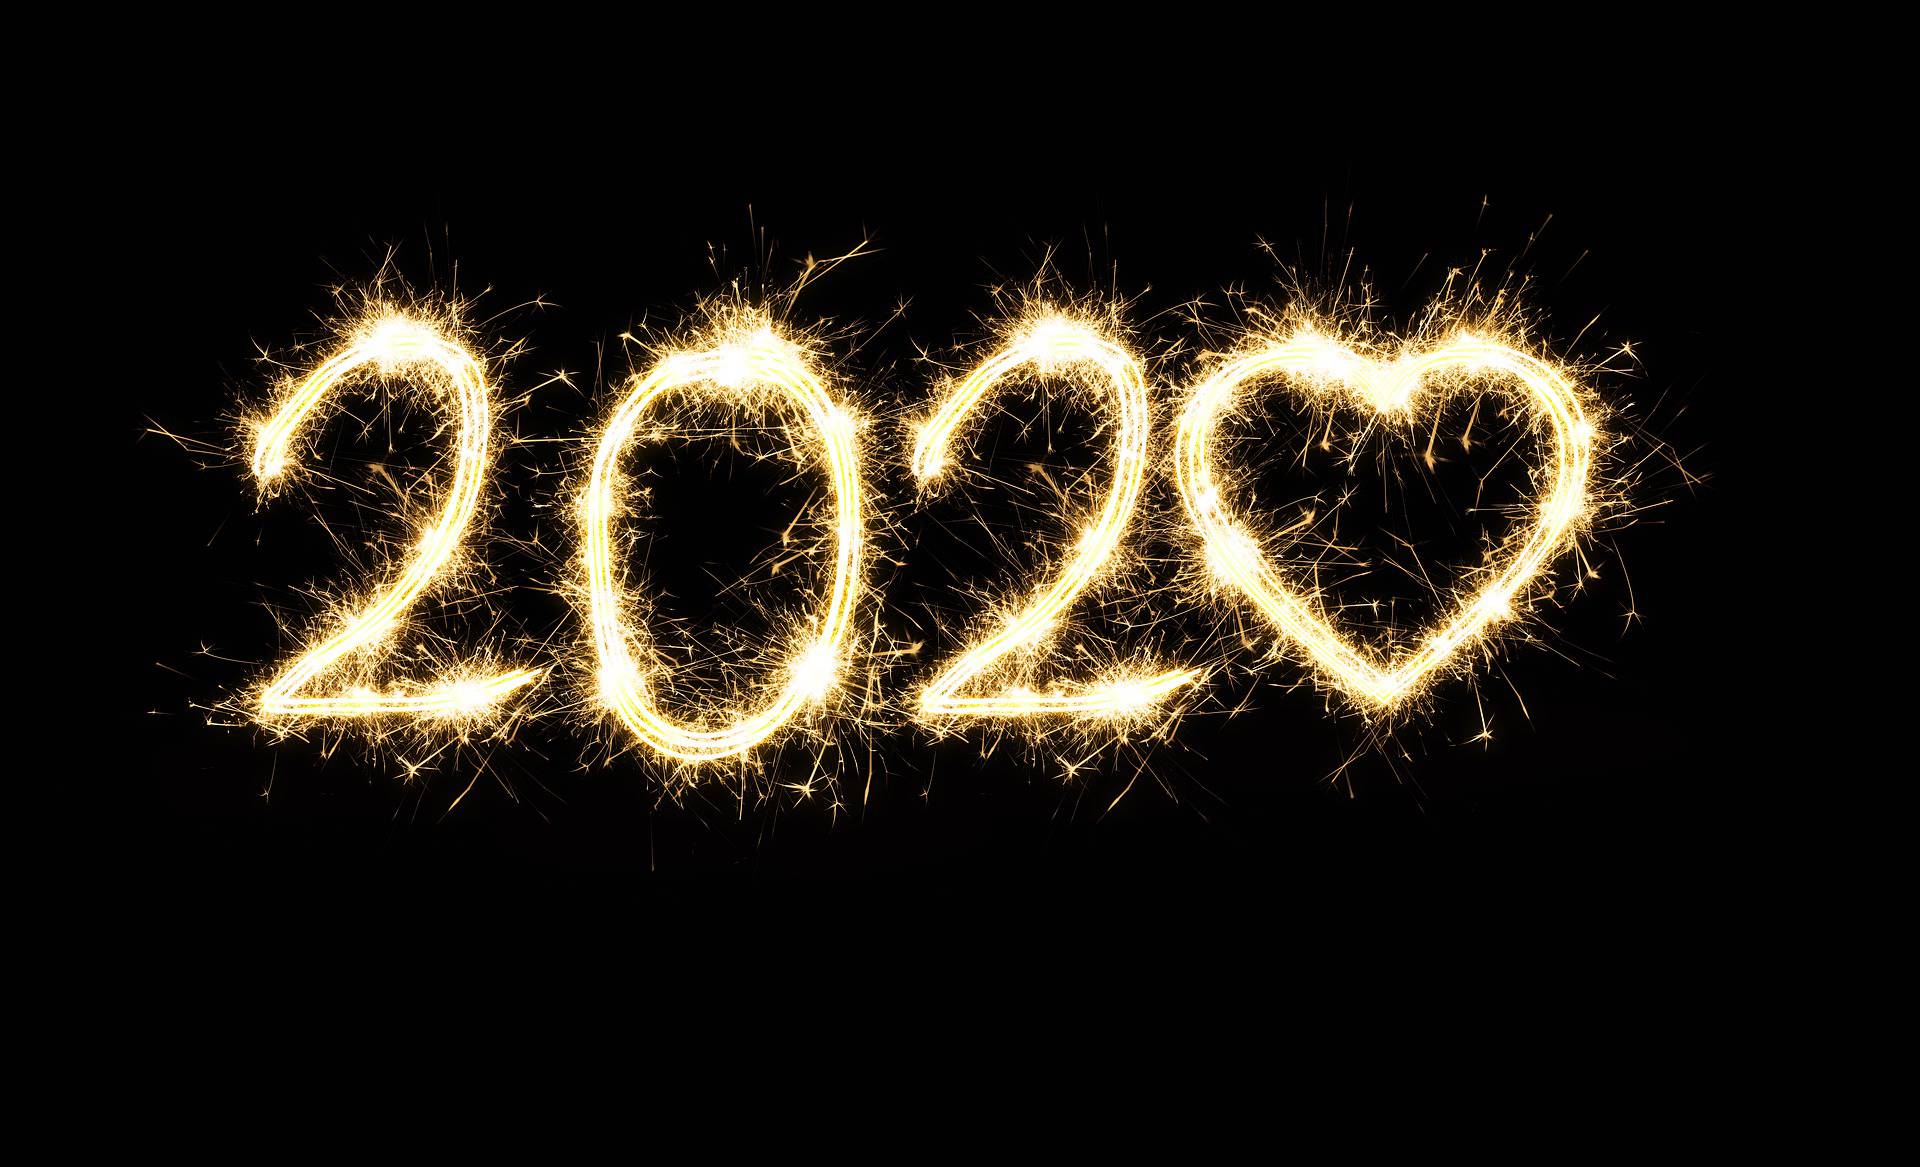 2020 Sollte das Jahr sein, in dem du aufhörst, dich selbst auf die letzte Stelle zu setzen